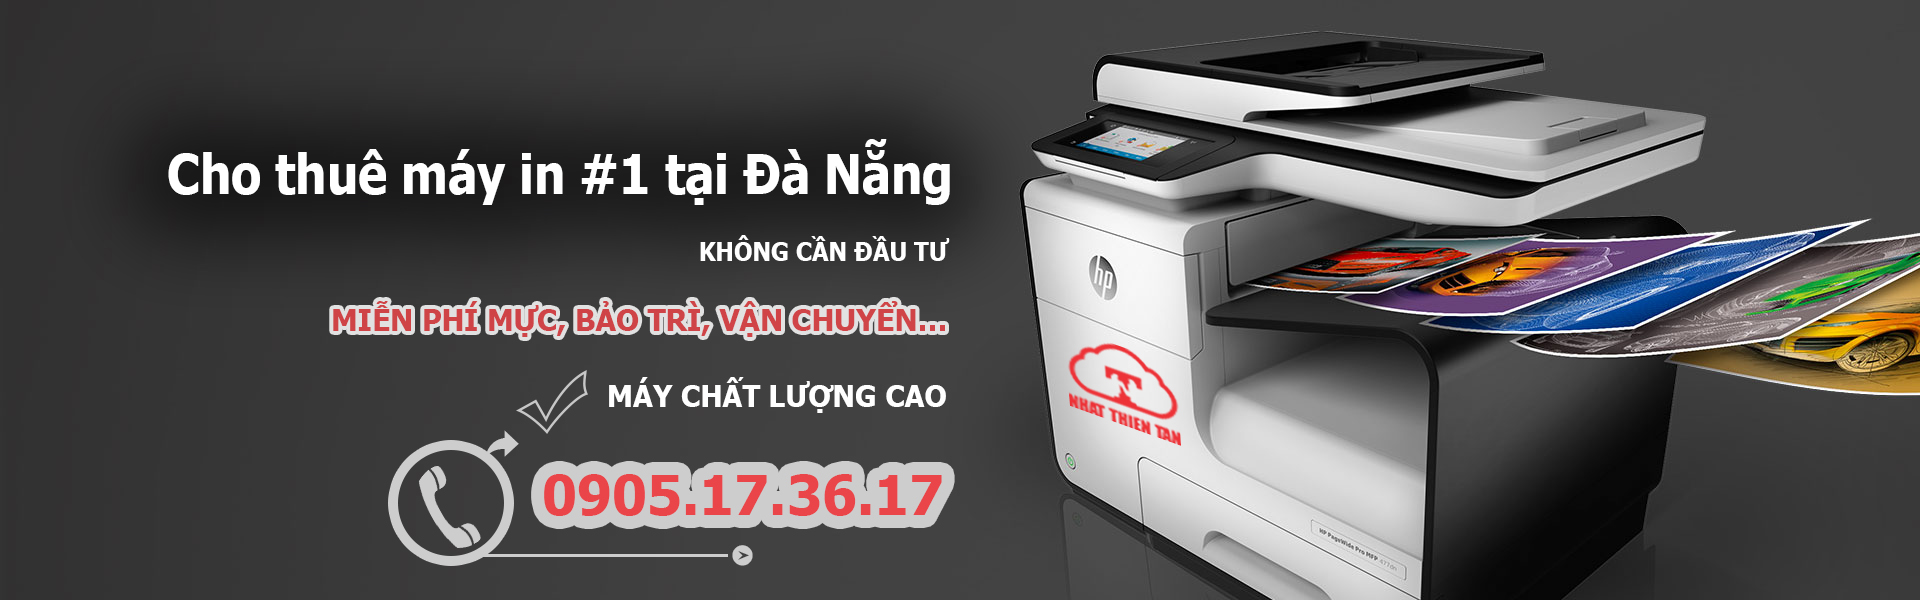 Nhất Thiên Tân - dịch vụ in ấn tốt nhất tại Đà Nẵng